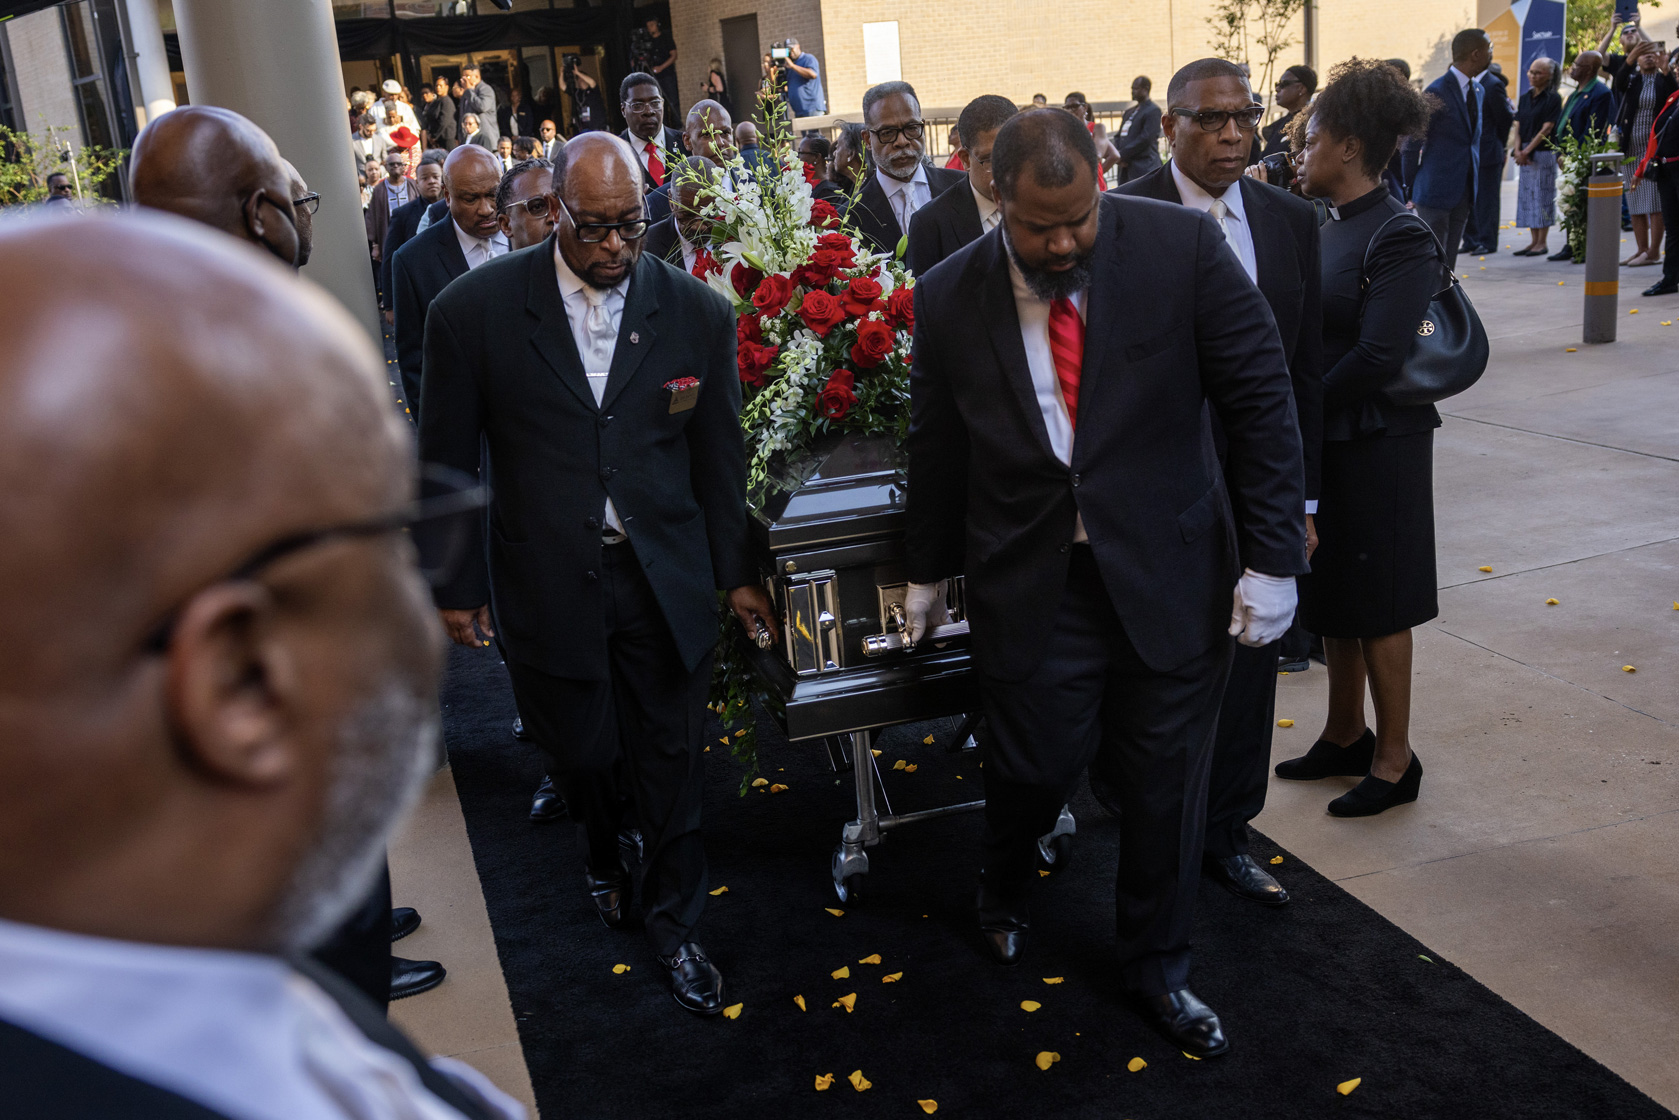 Rev. William Lawson’s legacy celebrated as a ‘multidimensional' civil rights icon